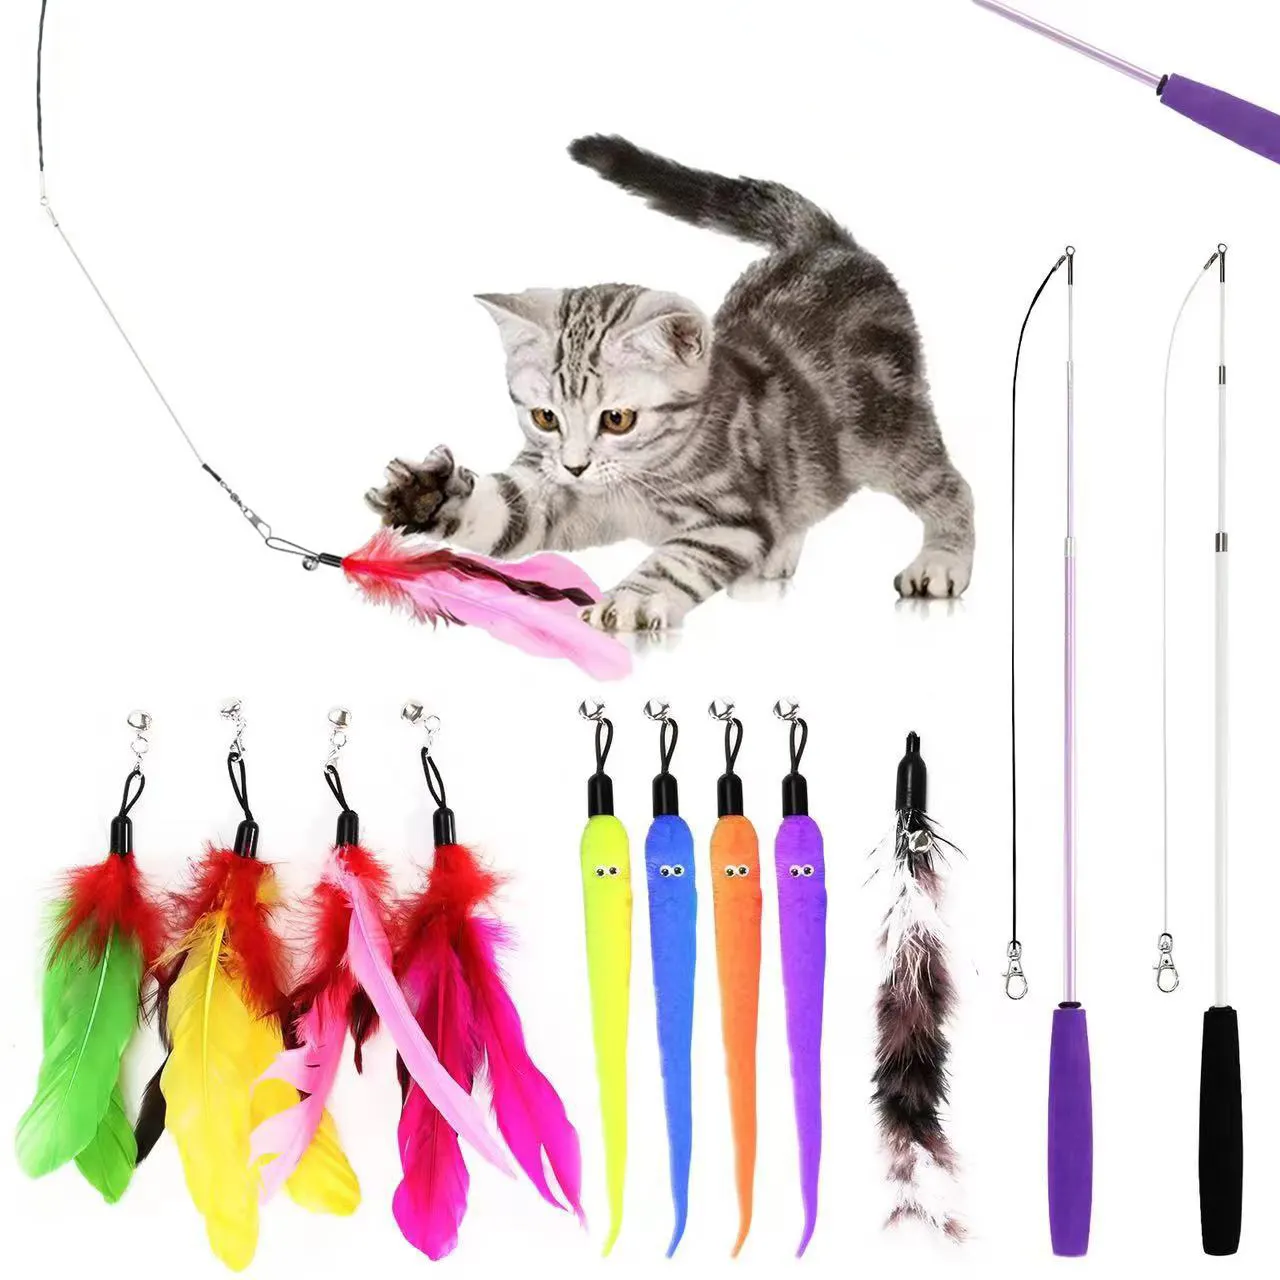 مجموعة 11 قطعة لعبة القطط الريشة عصا الجرس العصا القطط العصا التفاعلية لعب الحيوانات الأليفة هدية للداخل التفاعلية لعبة القطط